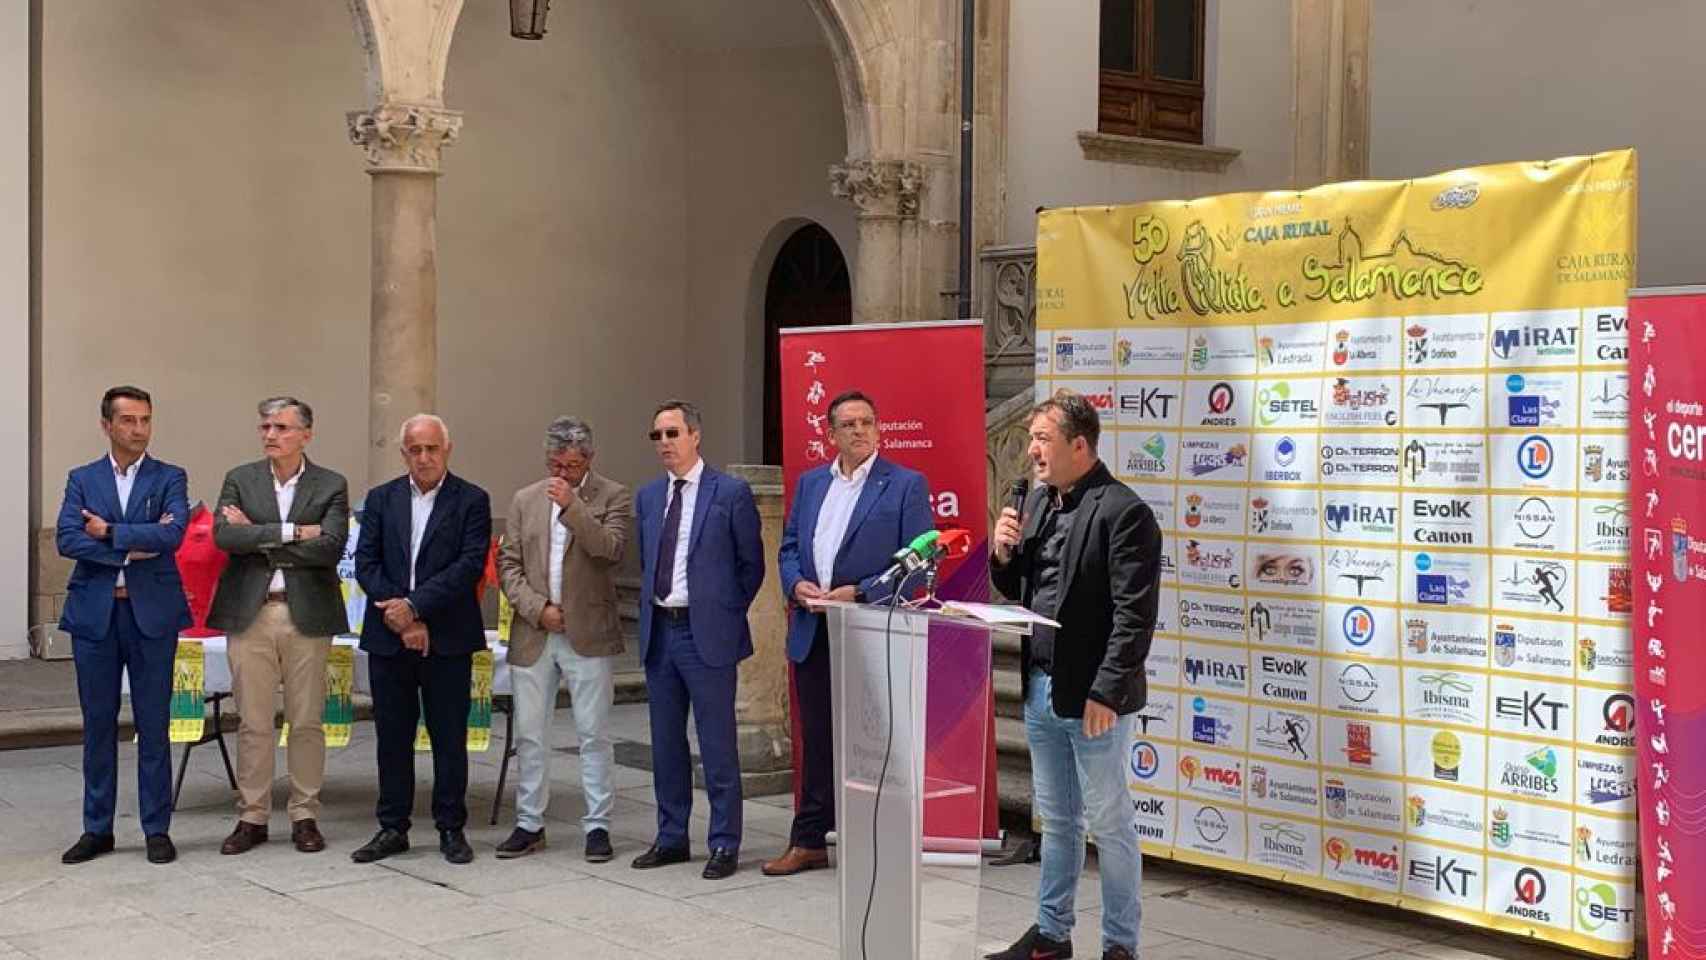 Presentación en La Salina de La Vuelta a Salamanca